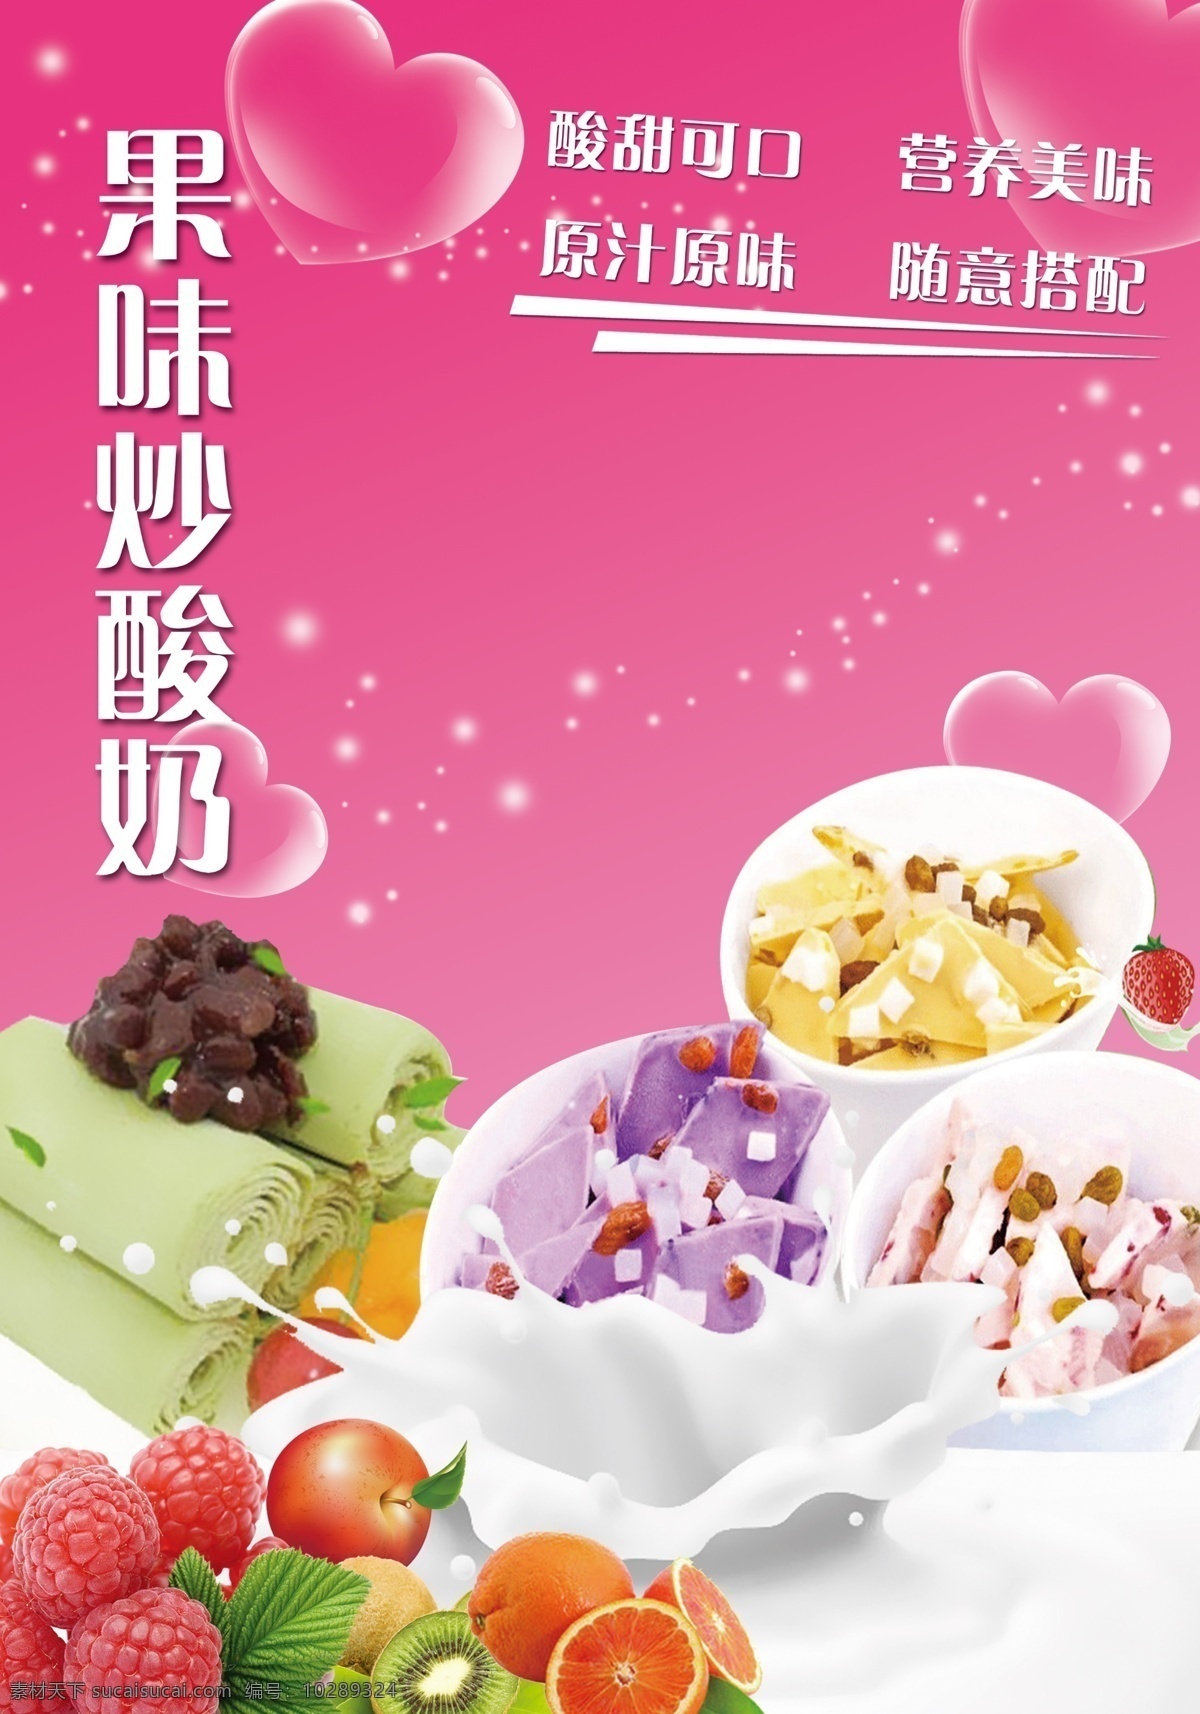 果味 炒 酸奶 海报 炒酸奶 冰淇淋 果味酸奶